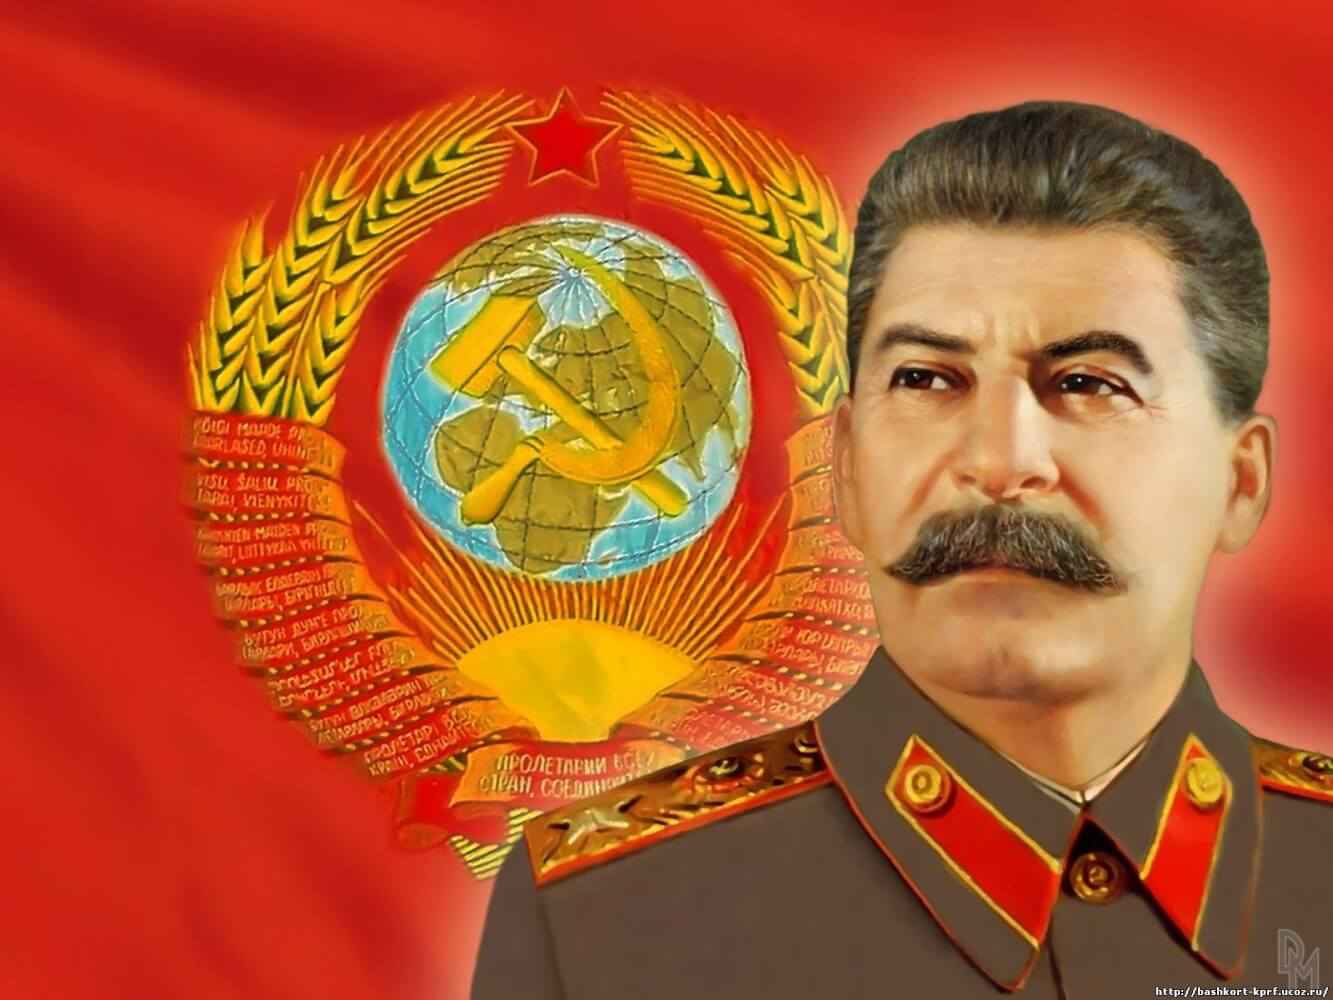 Тест: у кого уровень IQ выше - у вас или Иосифа Сталина?